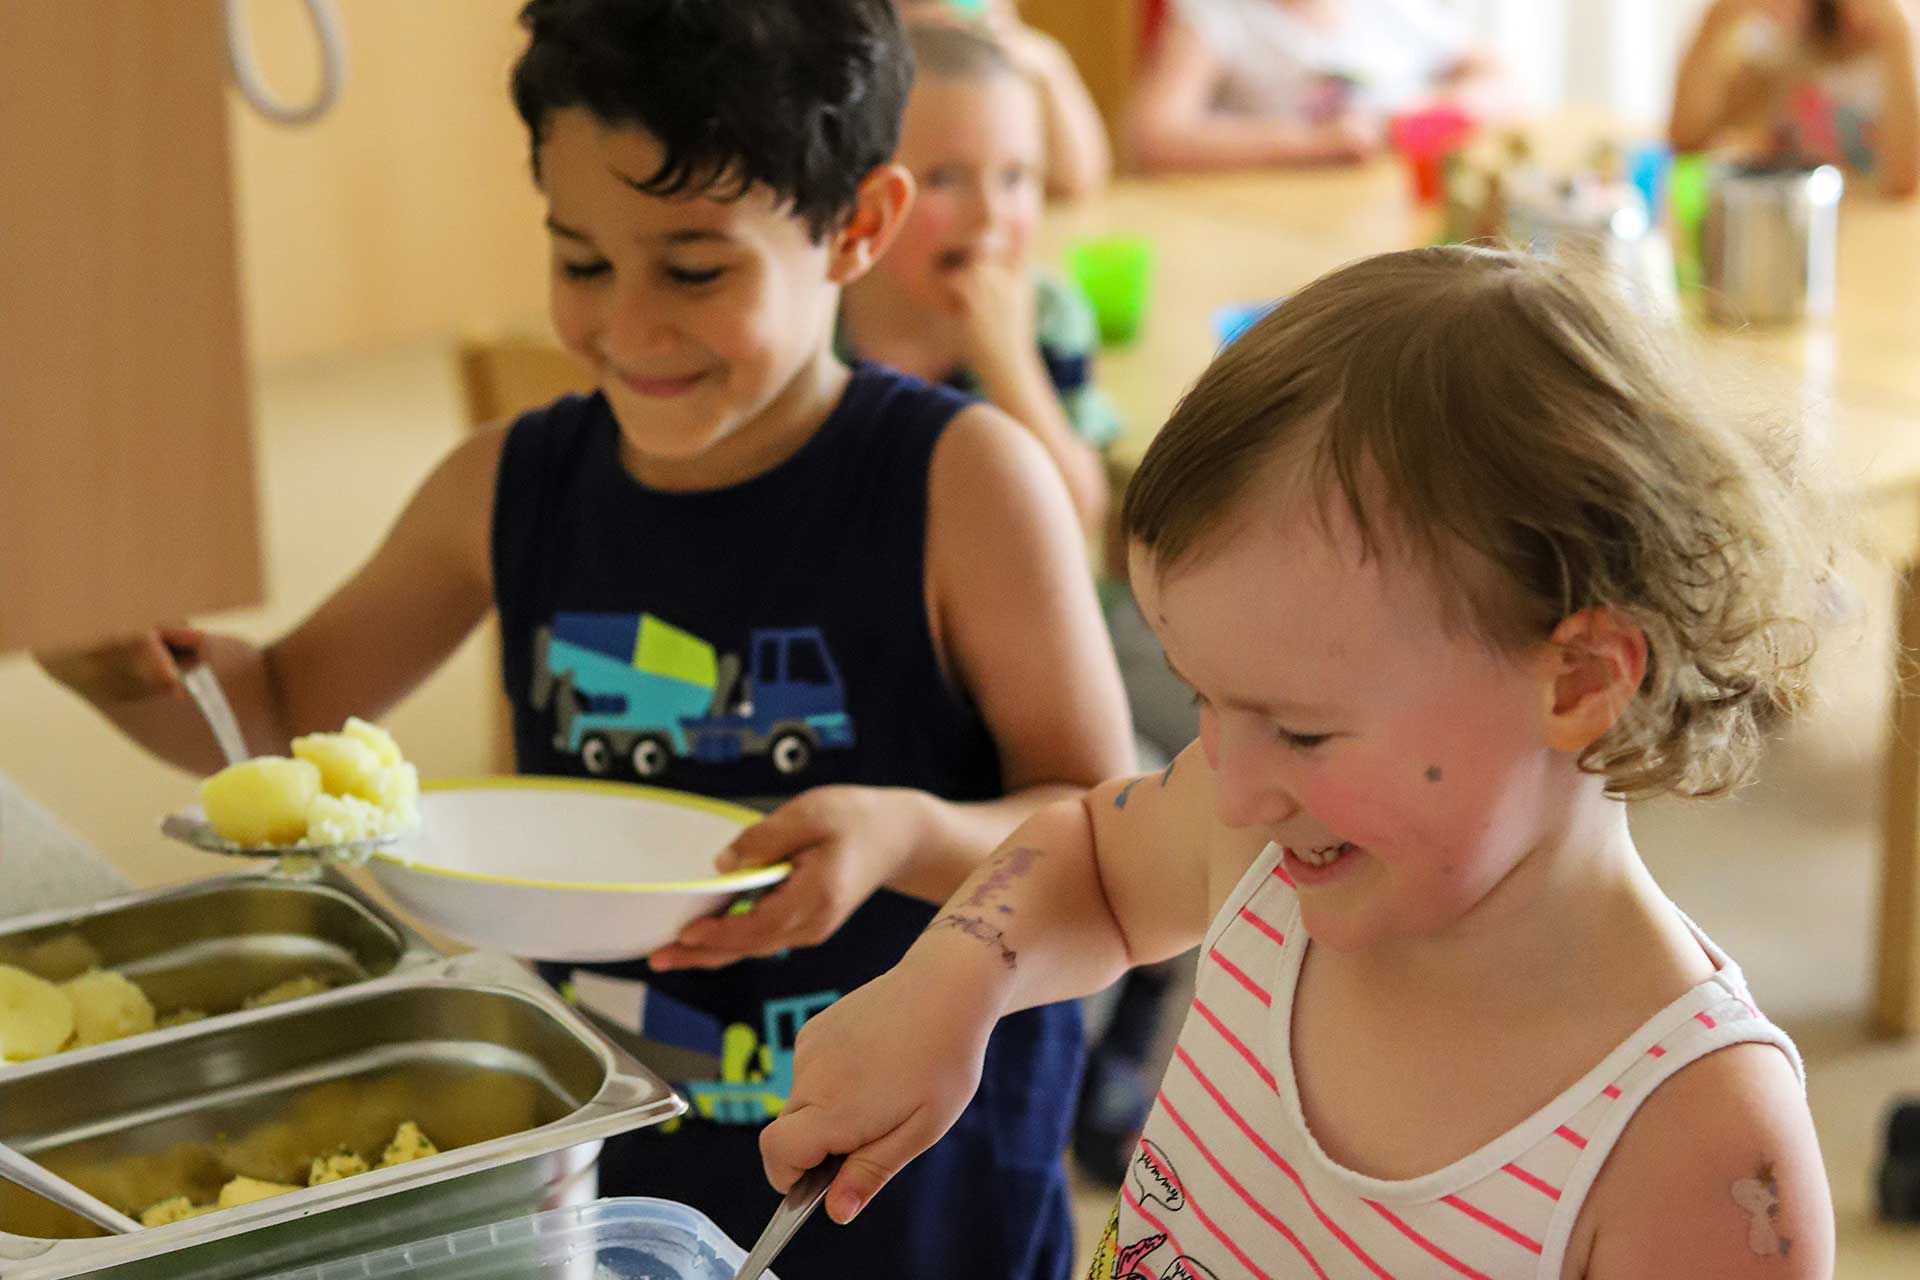 Das Mittagessen wird sich von den Kindern selbst auf den Tellern getan. Es gibt Kartoffeln, Spinat und Ei.